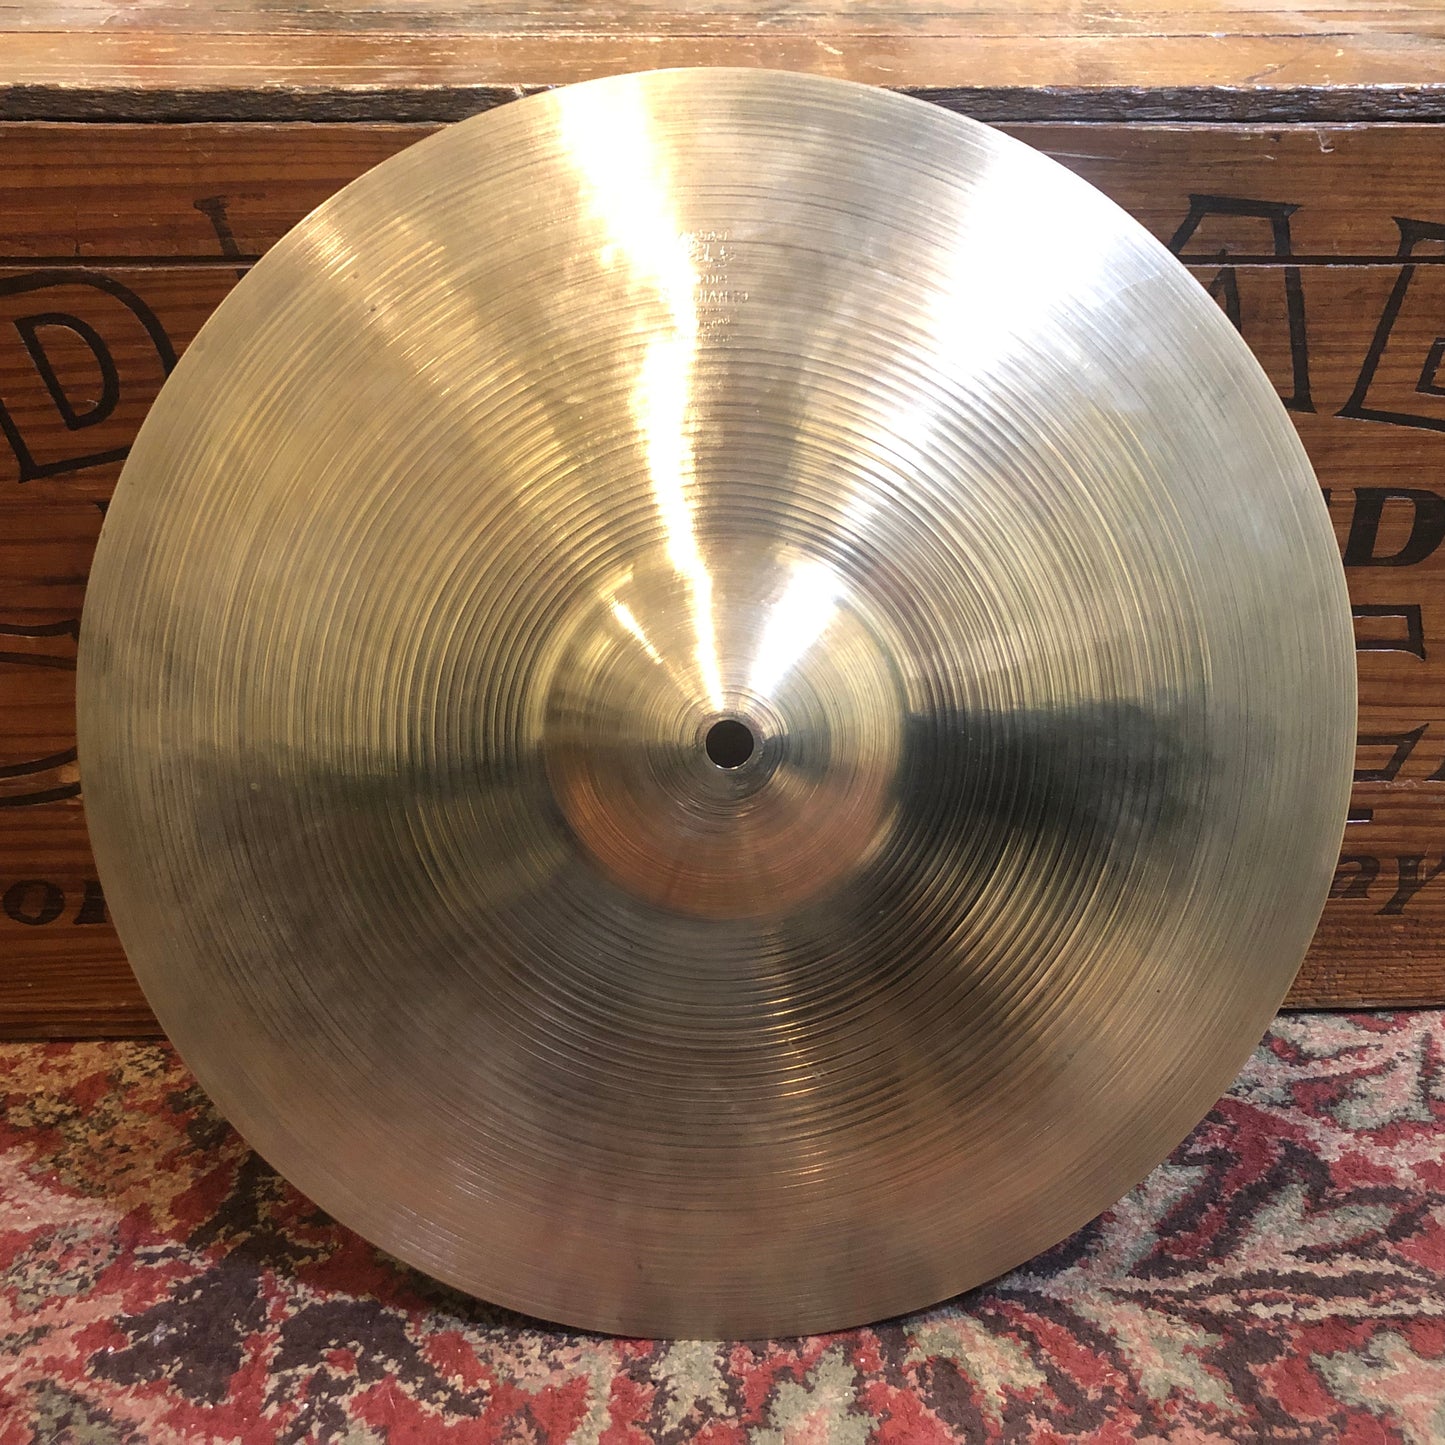 1950s Zildjian A 14" Hi-Hat Cymbal Pair 728g/792g #763